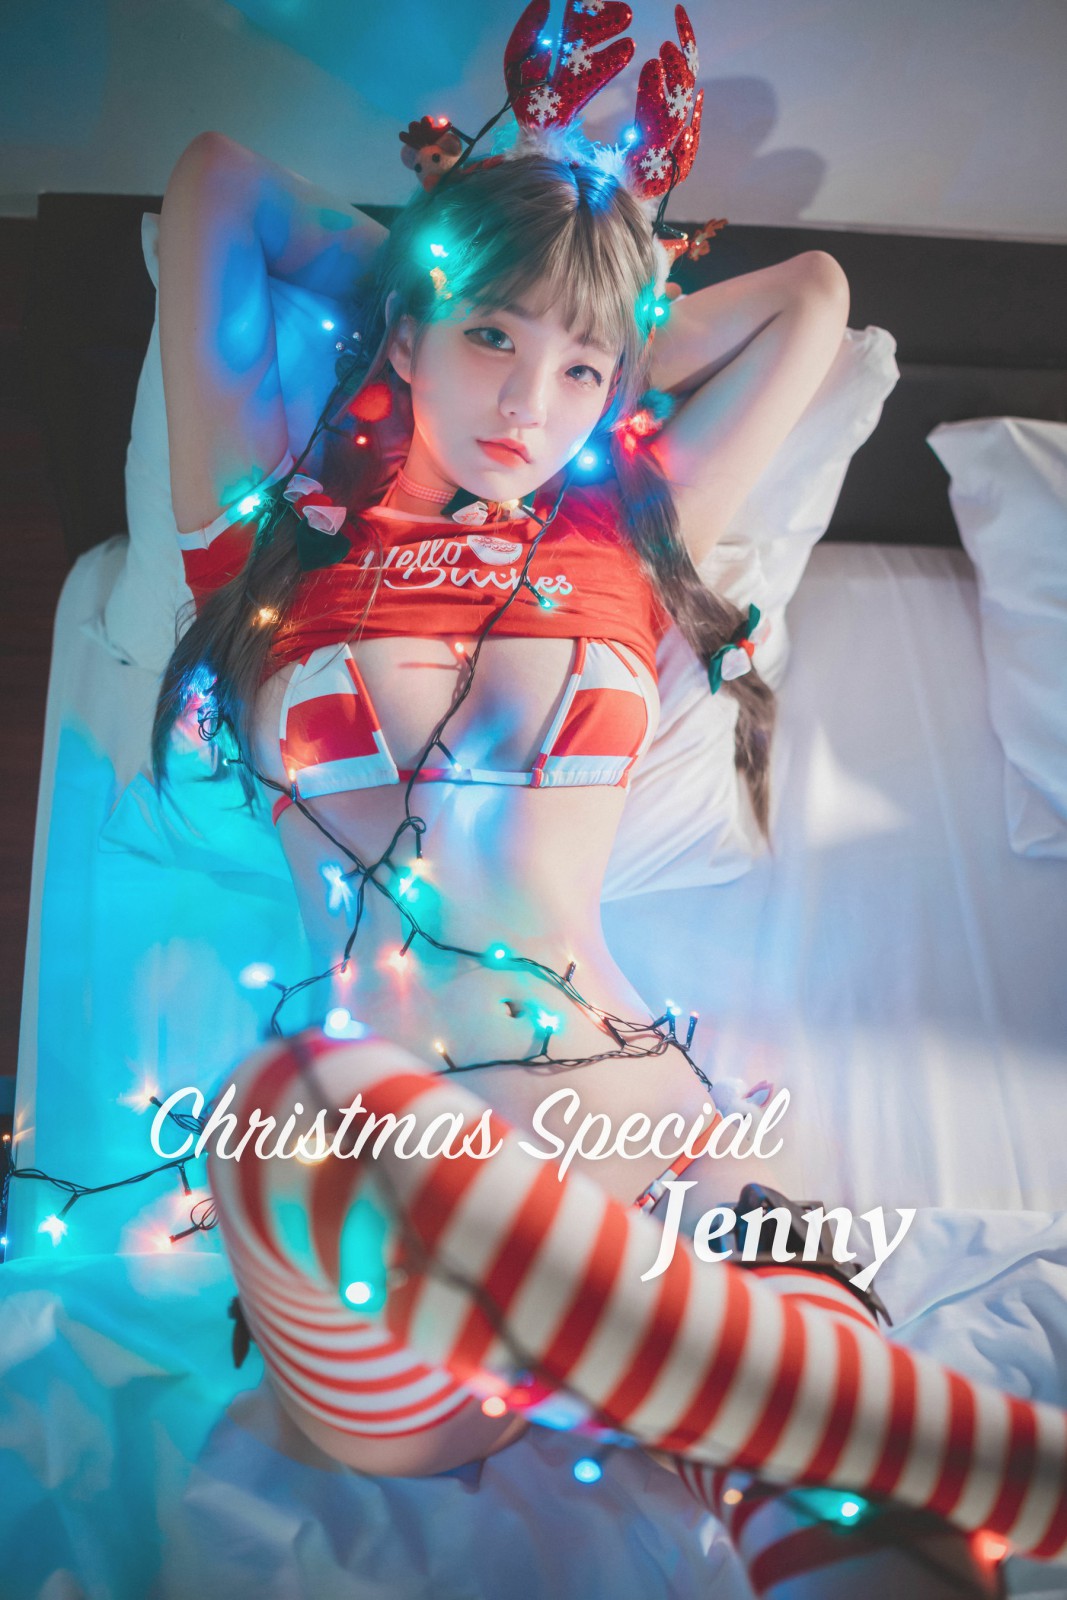 [DJAWA] Jenny - 圣诞少女 第1张